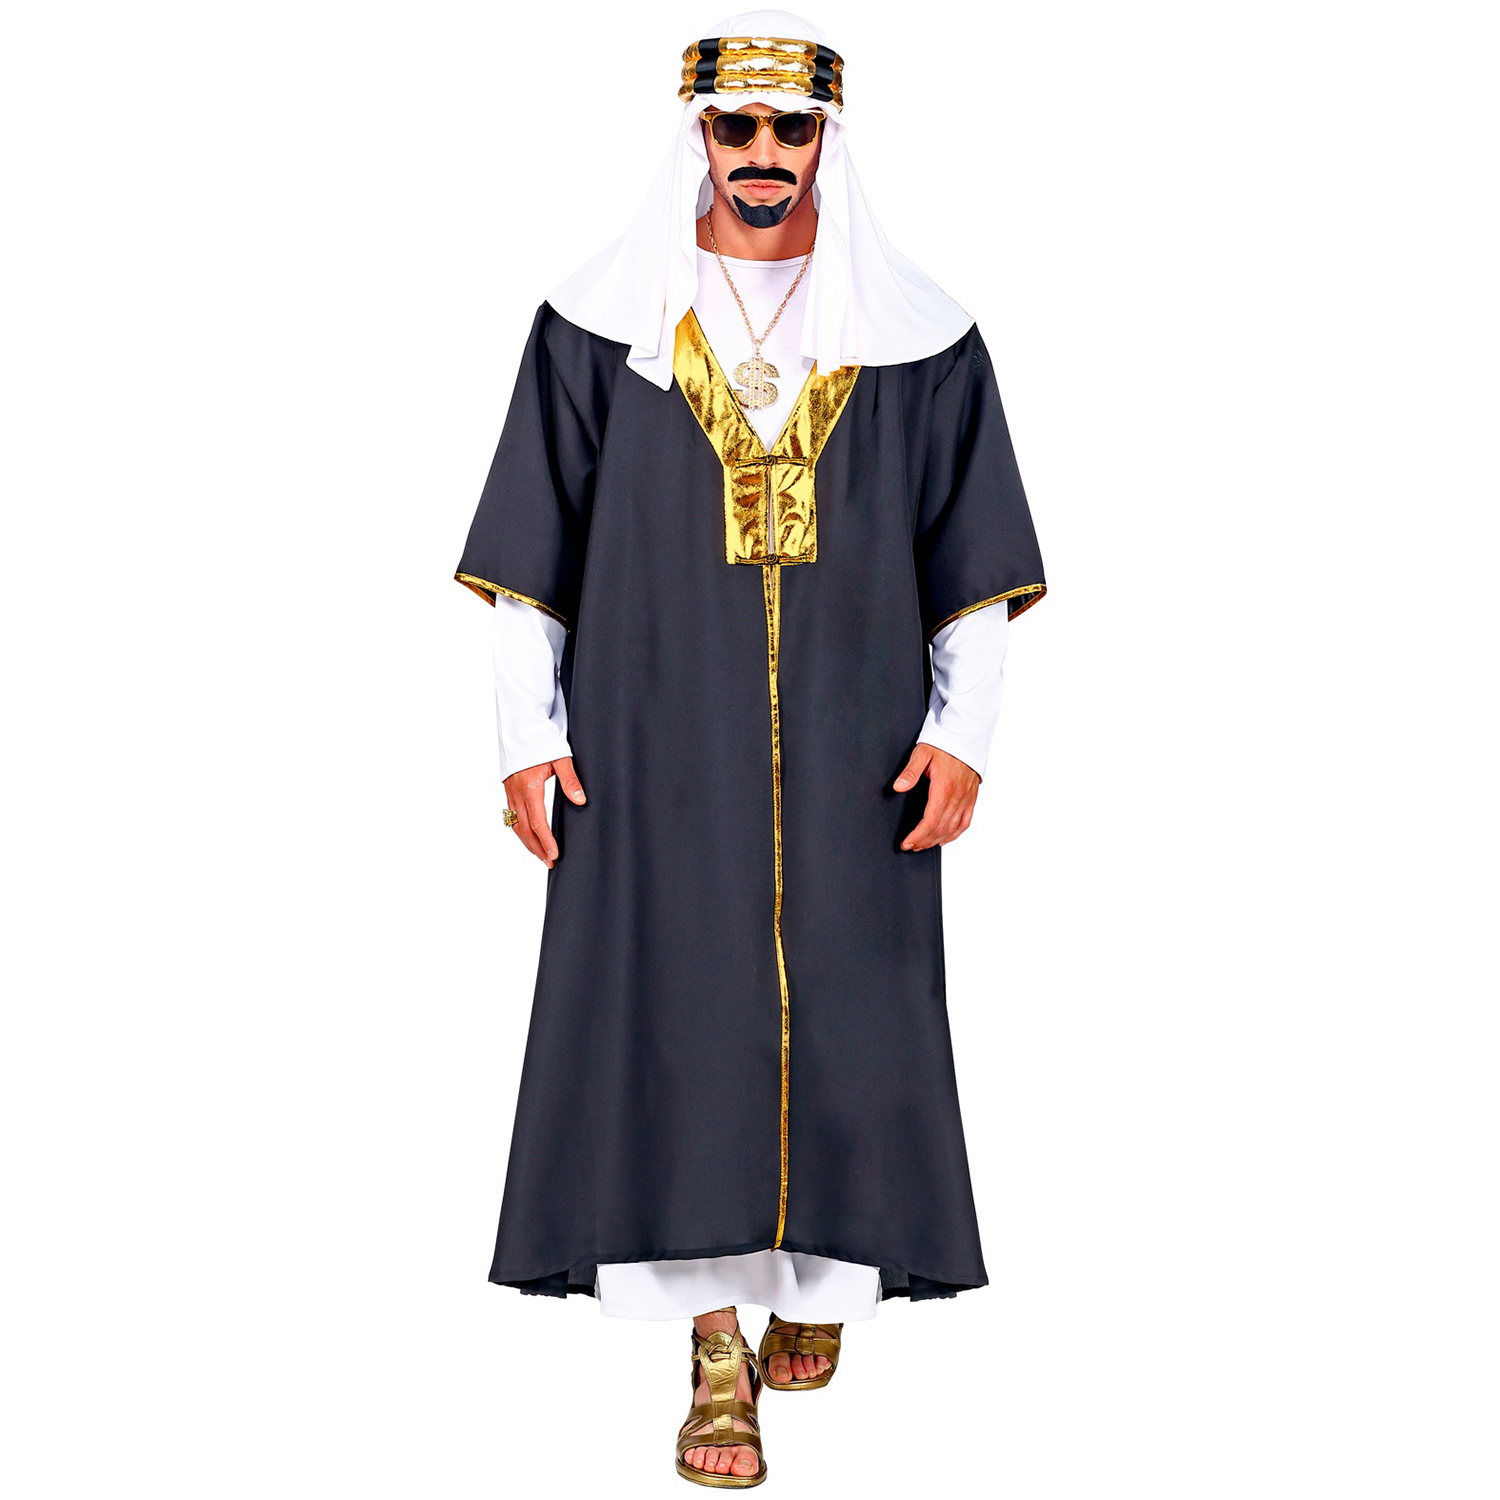 NEU Kostüm SULTAN, Tunika mit Robe und Turban / Scheichtuch, Größe: S-M